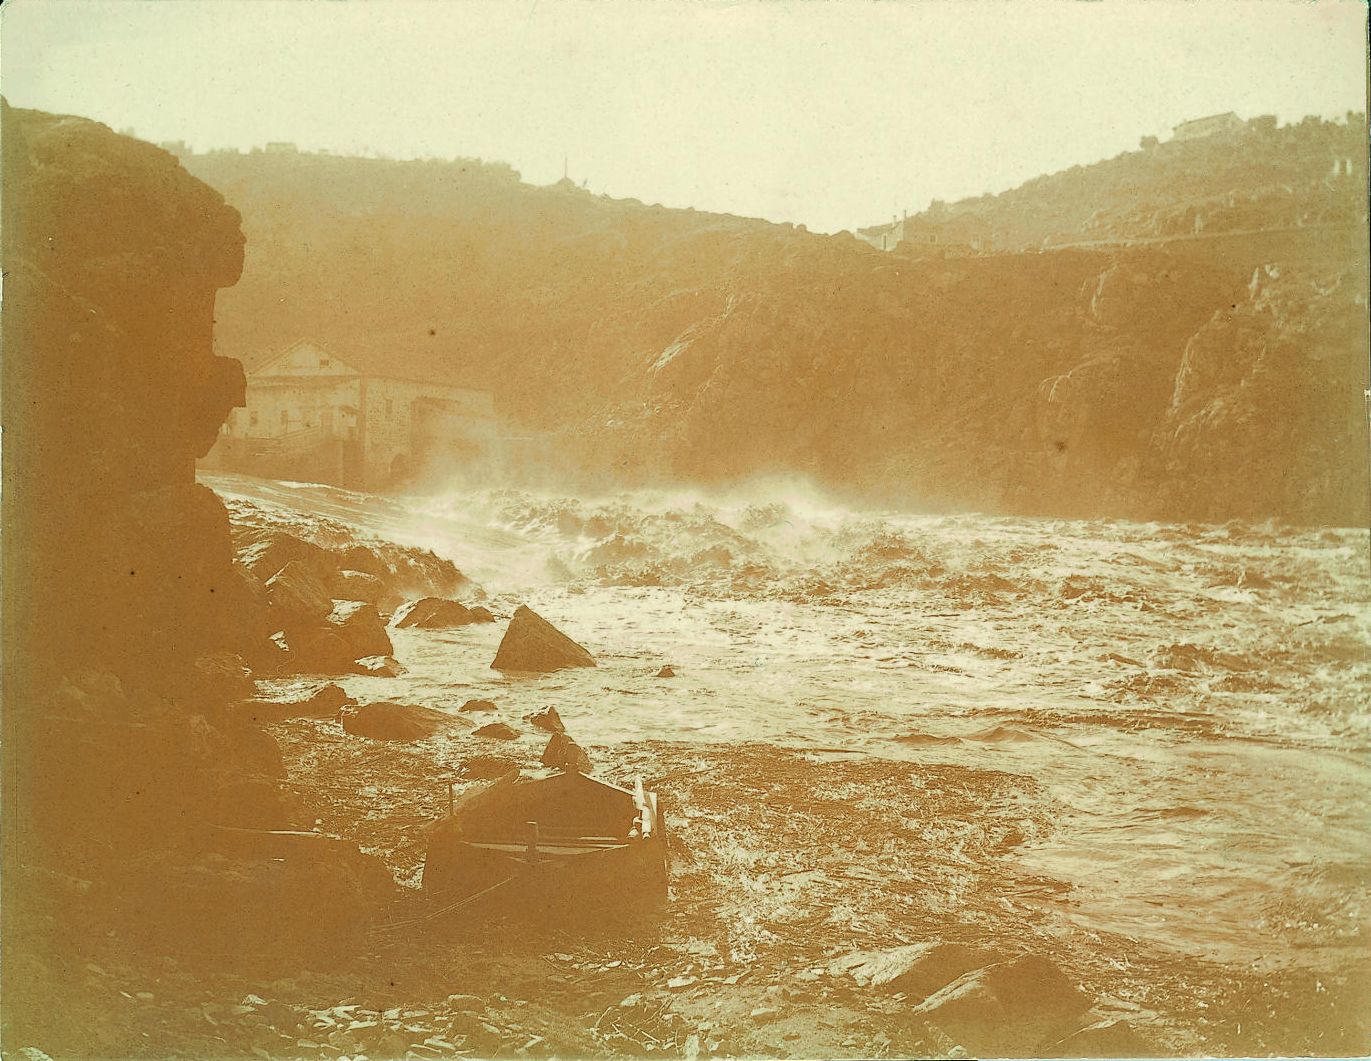 d.-Crecida del río en el Molino de Santa Ana. Año 1910